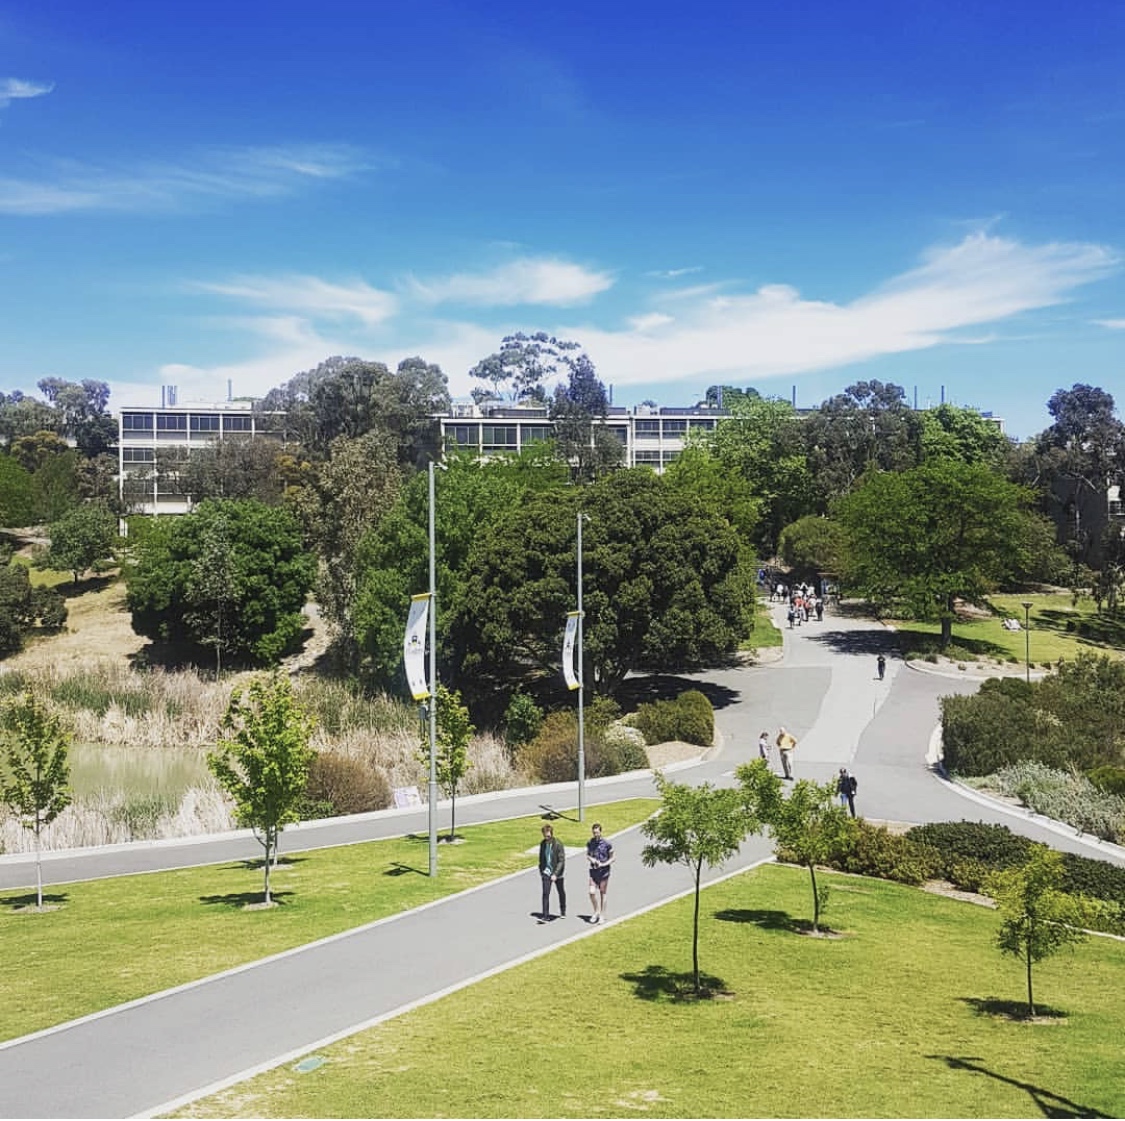 جامعة فلندرز – University of Flinders